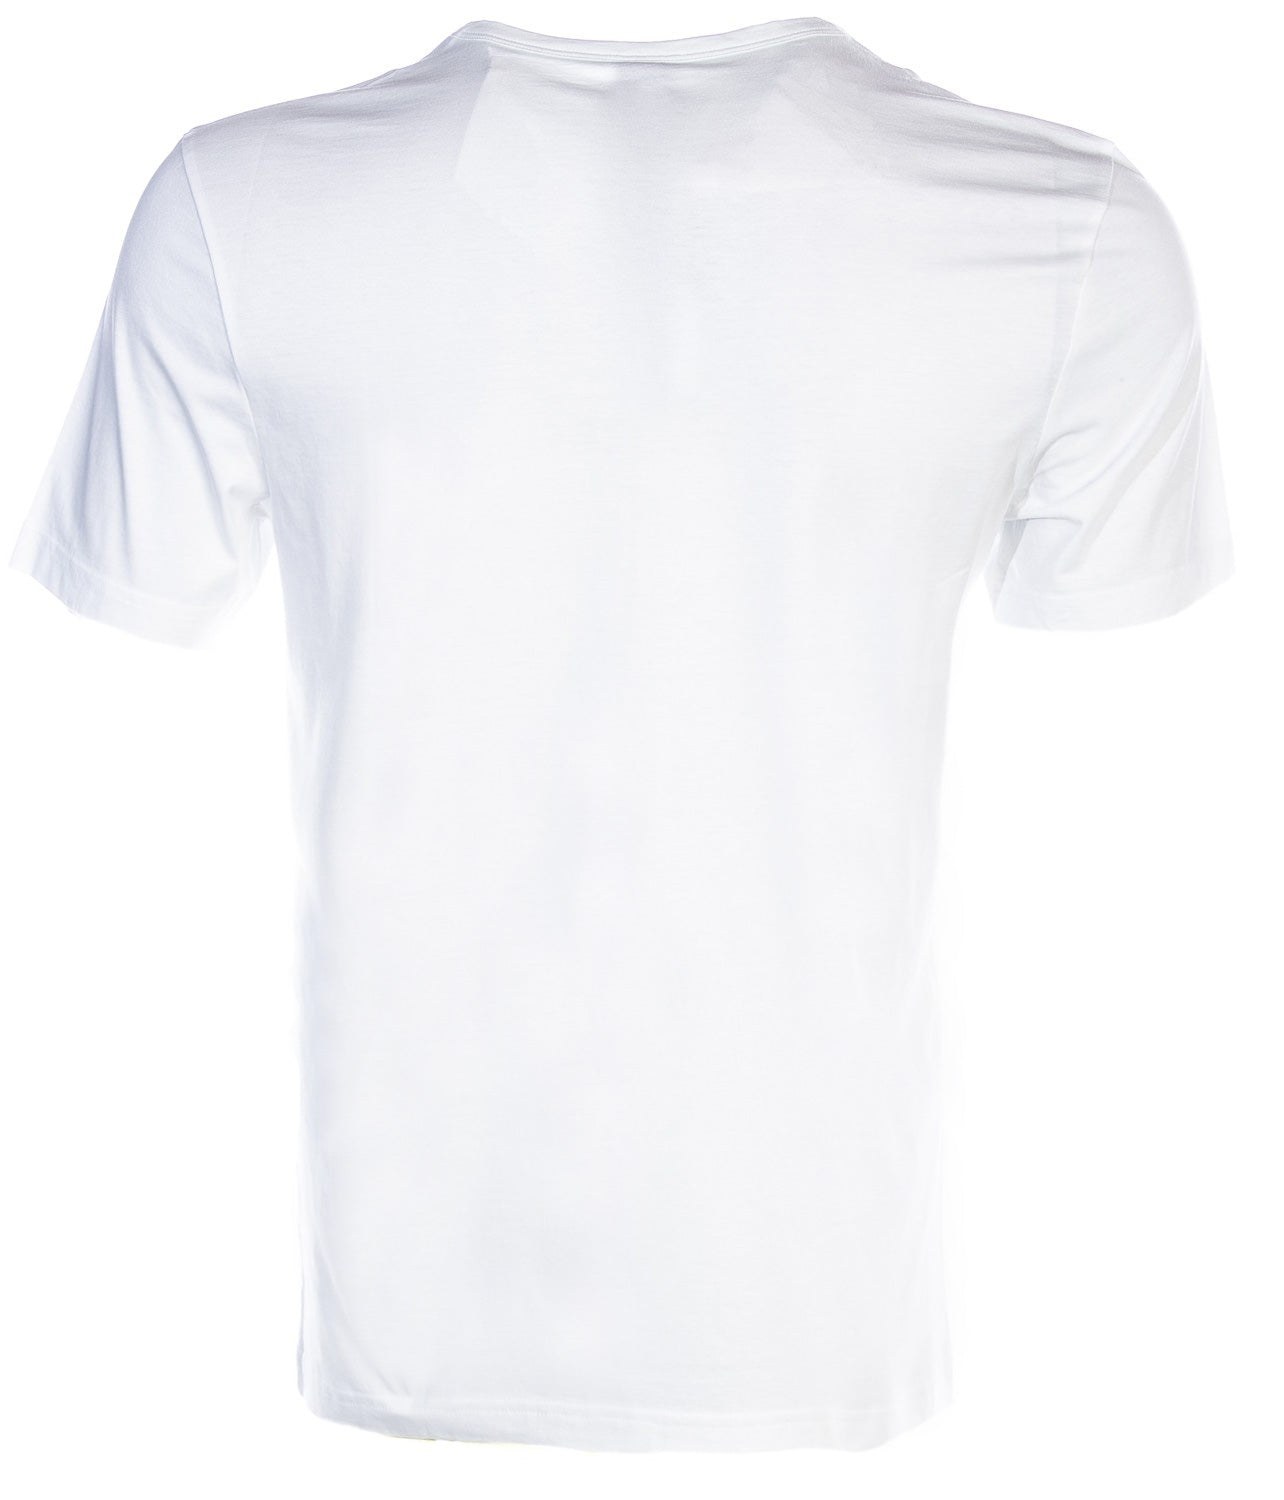 BOSS Tee 8 T Shirt in White